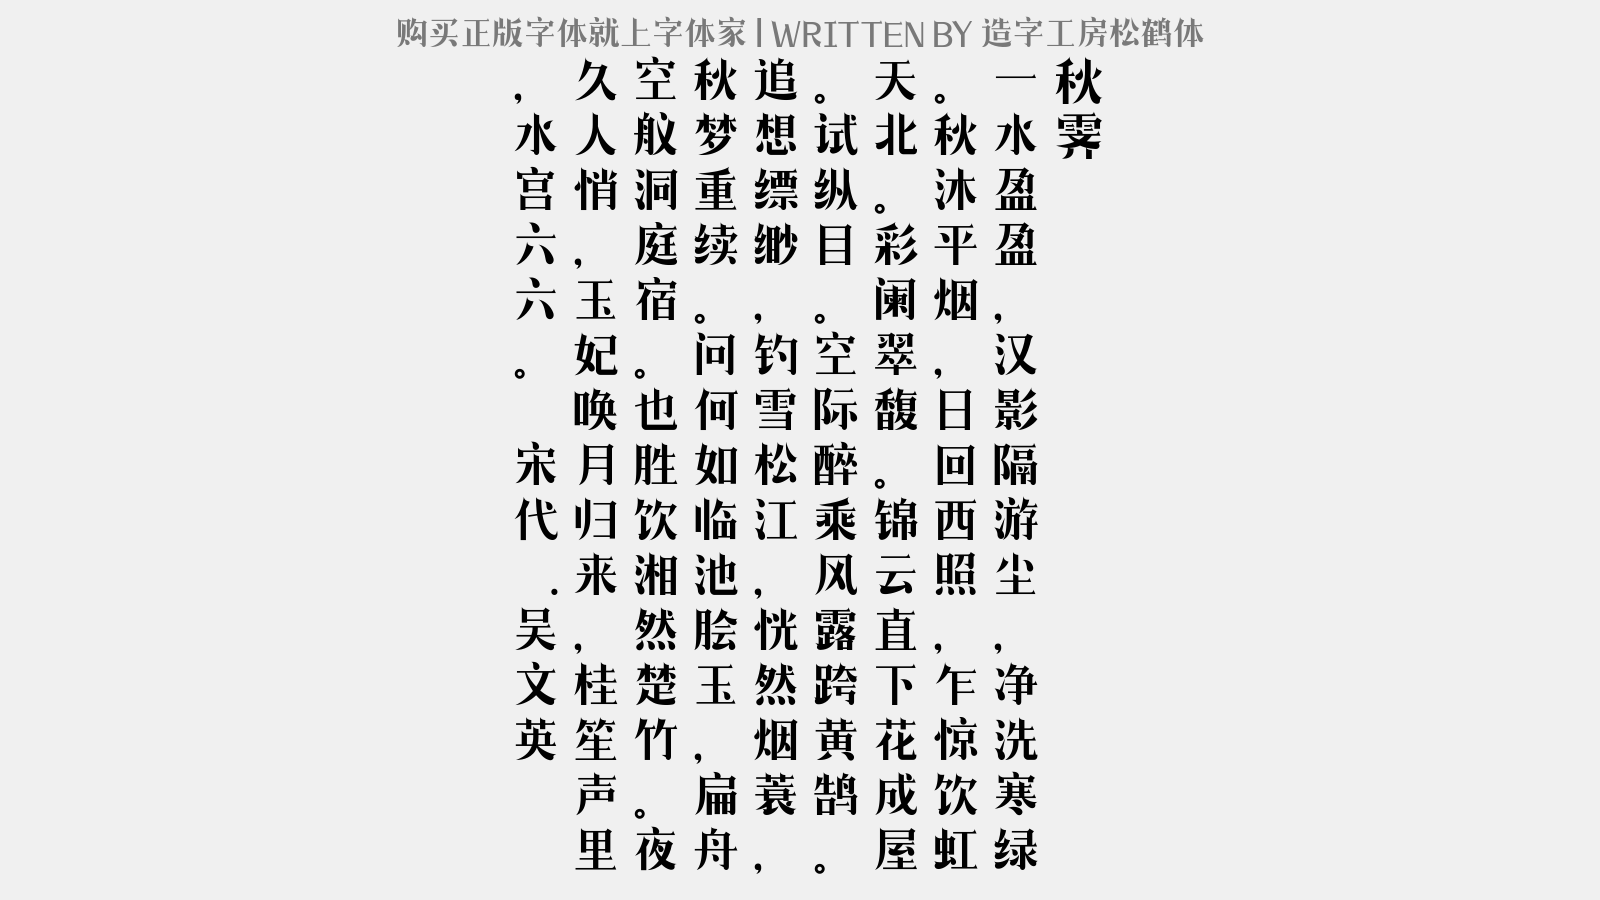 造字工房松鹤体免费字体下载 中文字体免费下载尽在字体家